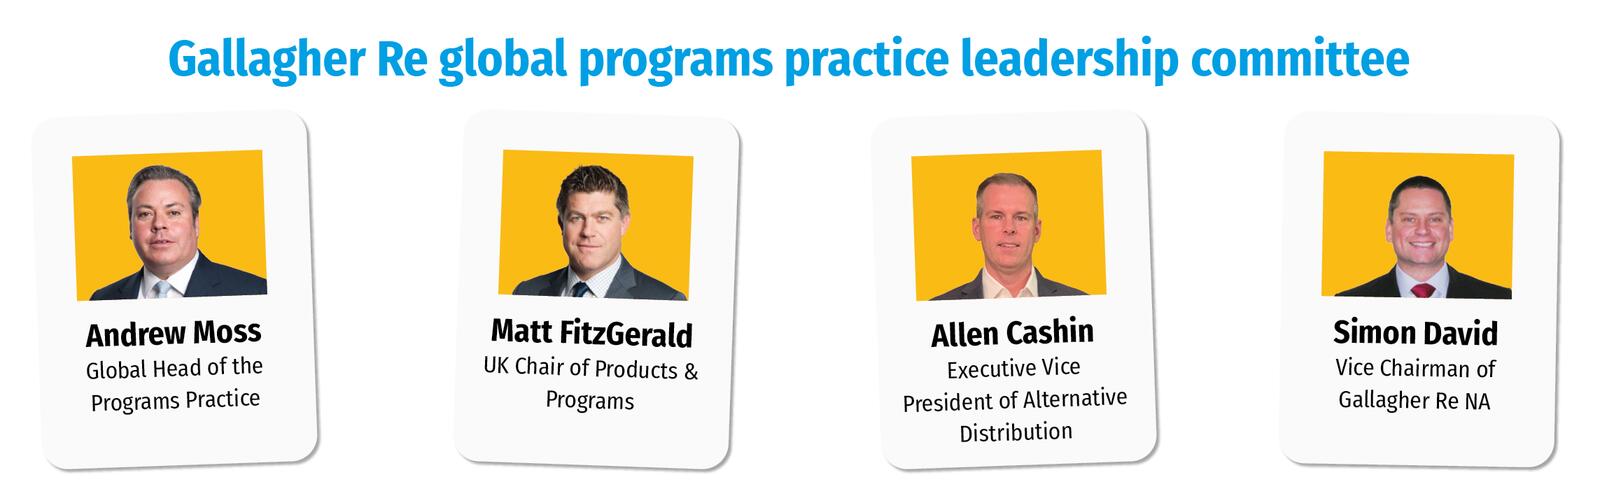 Gallagher Re global programs practice leadership committee